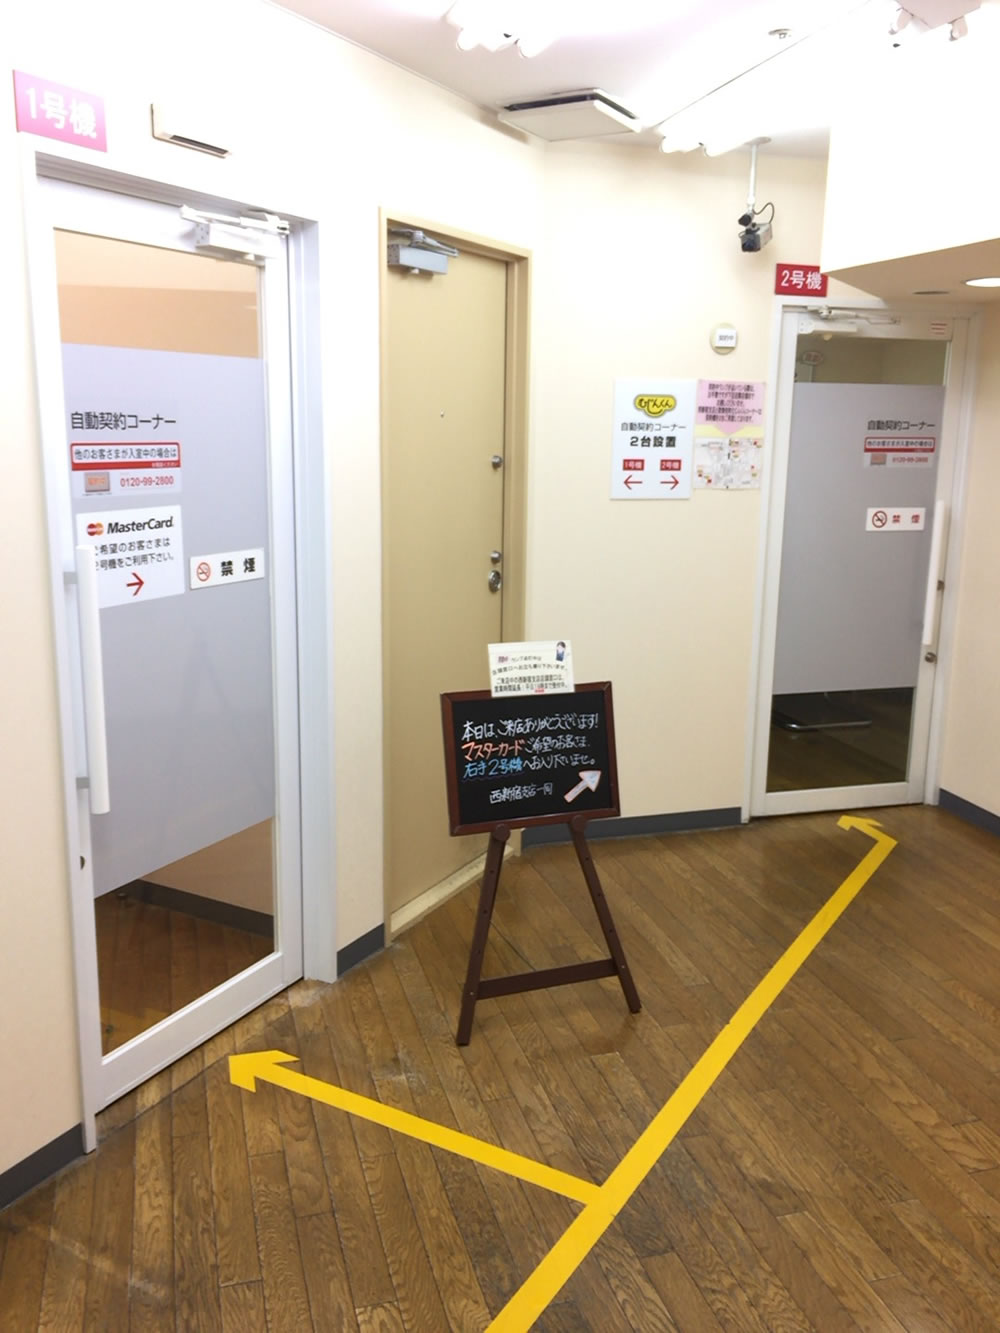 アコム西新宿支店ATM自動契約機（むじんくん）